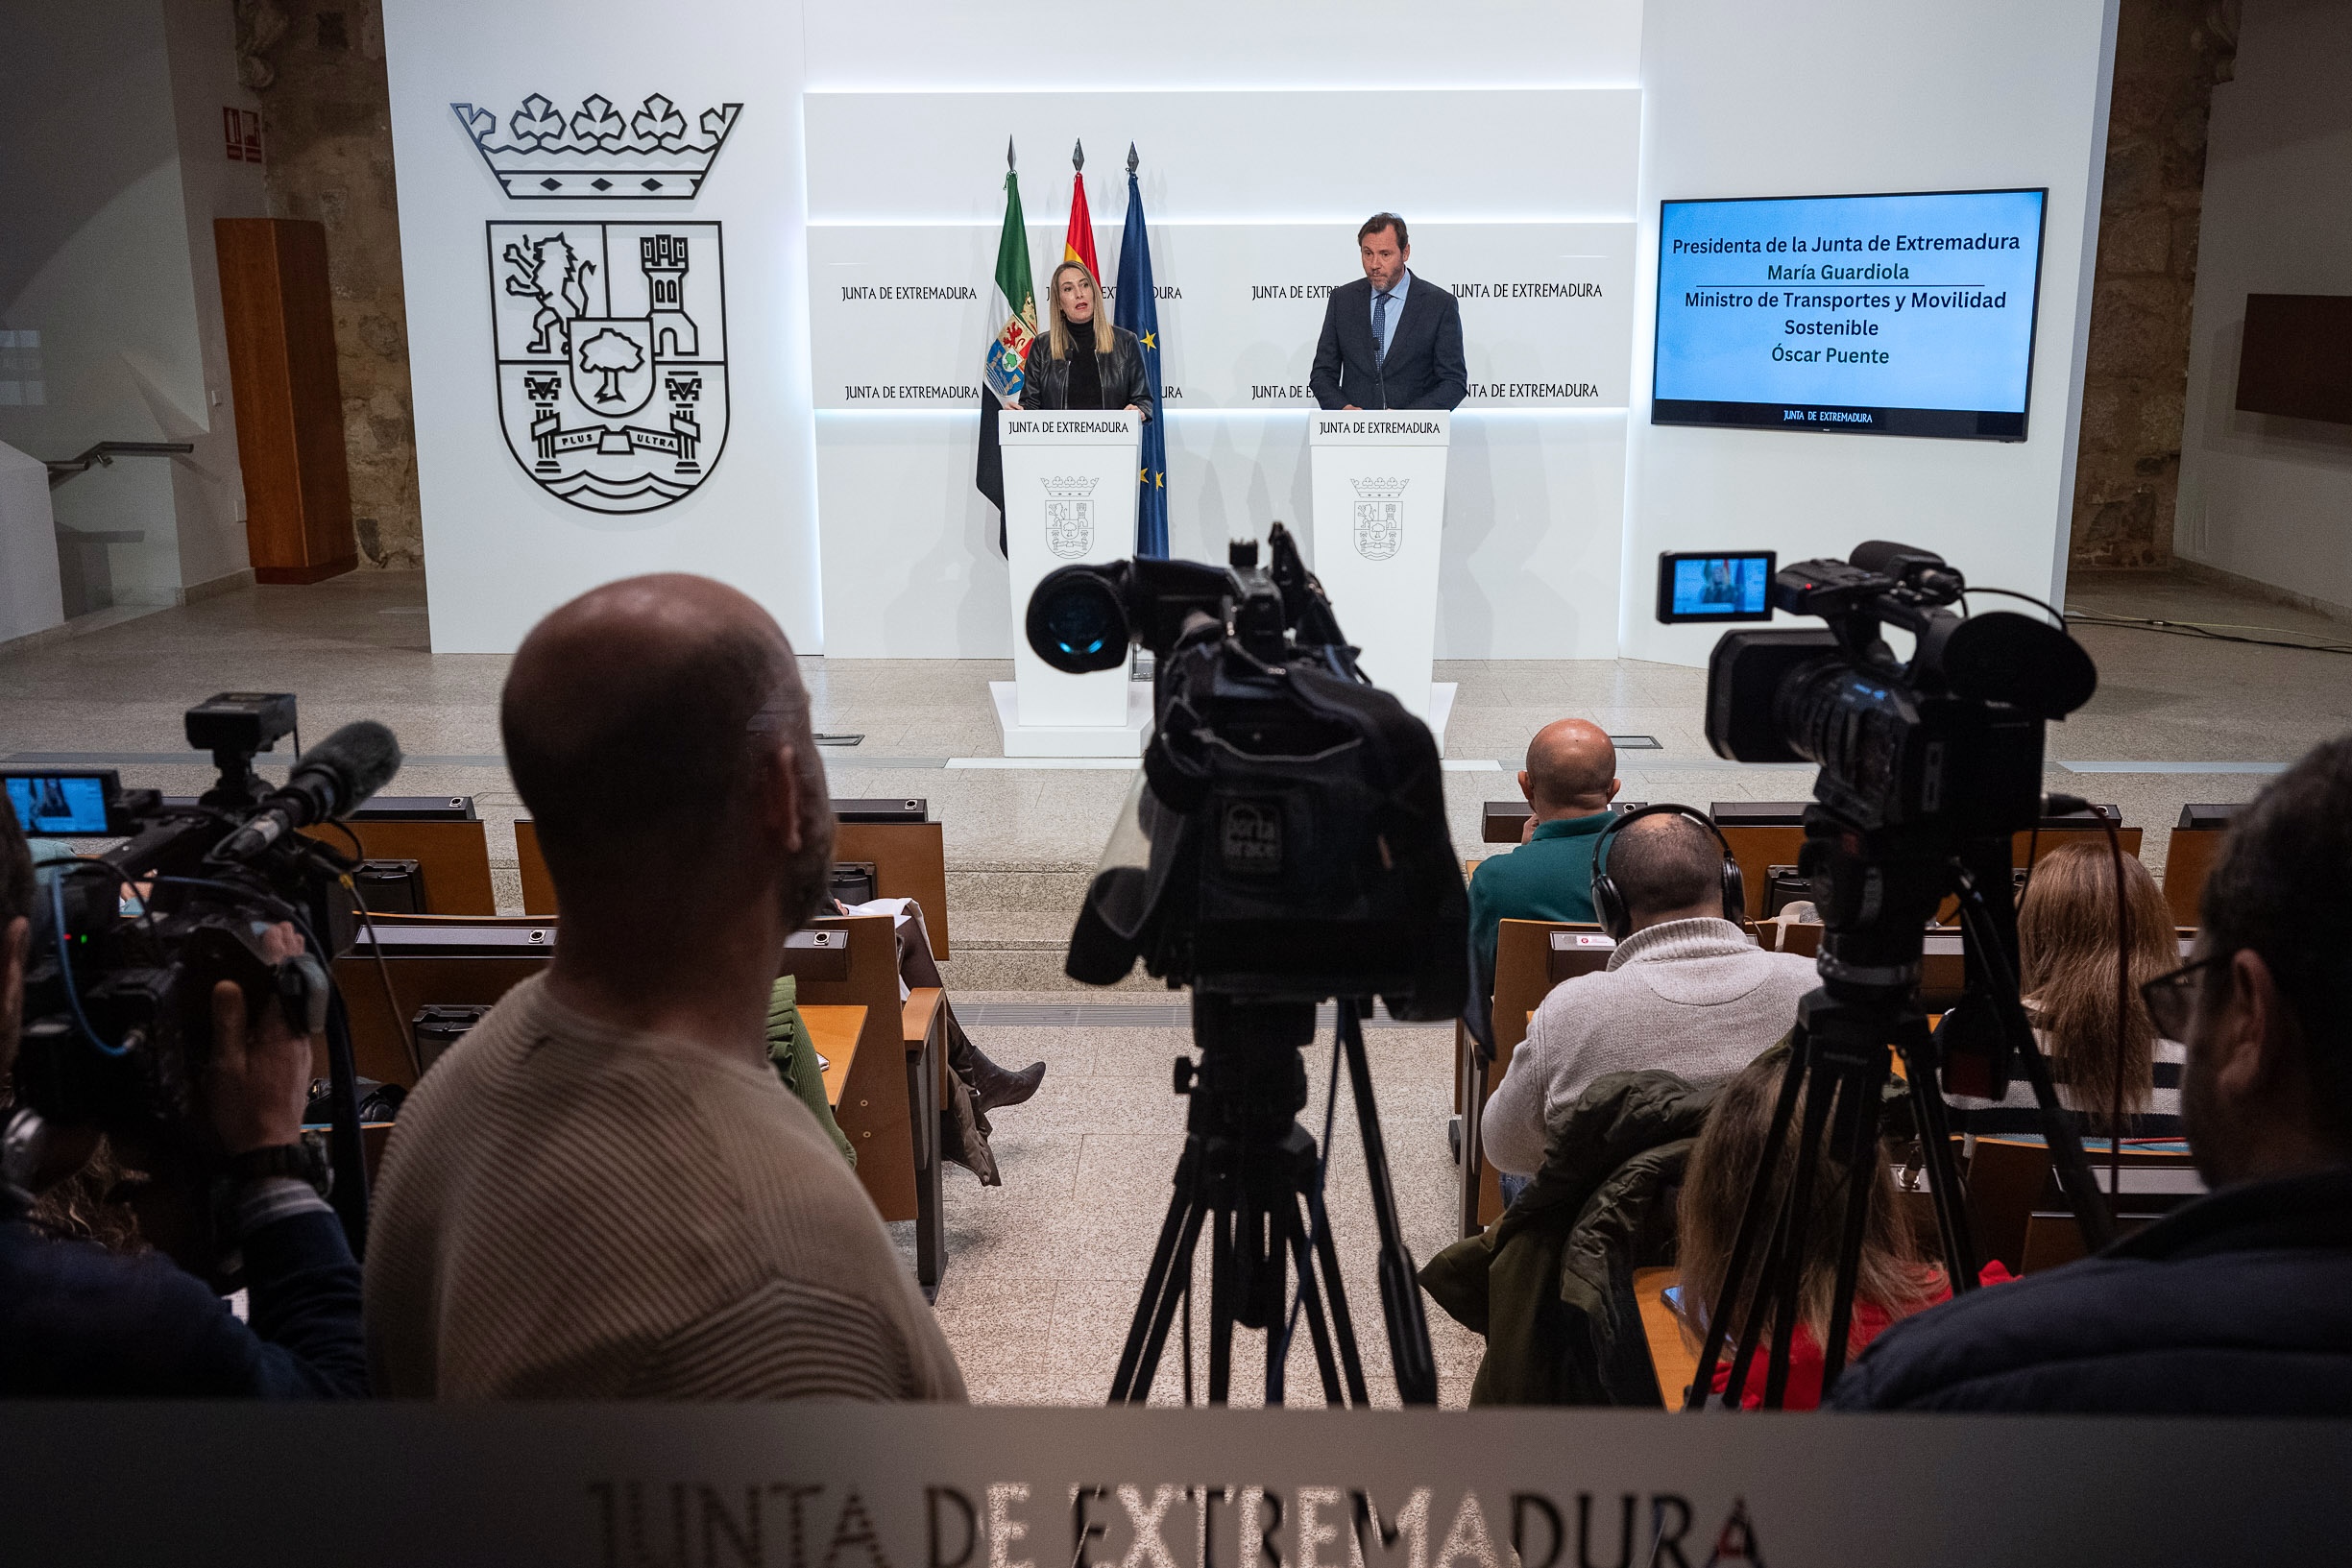 La presidenta de la Junta, María Guardiola, y el ministro de Transportes y Movilidad Sostenible, Óscar Puente, en la rueda de prensa.